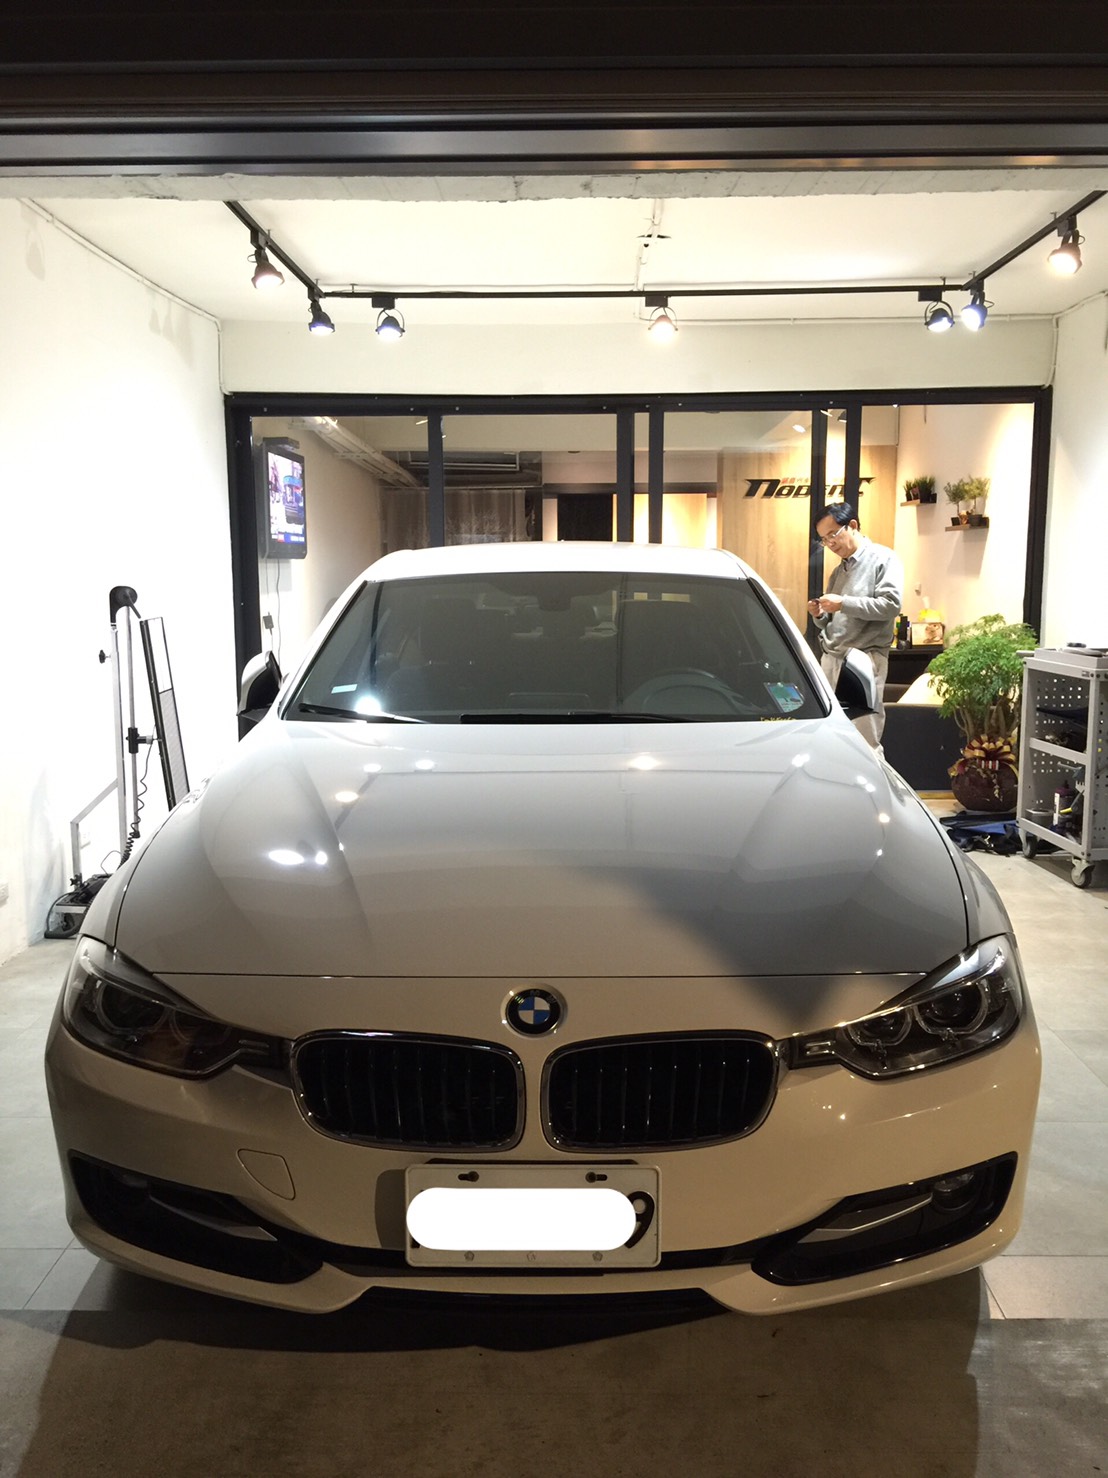 BMW 318d 門鈑凹痕修復